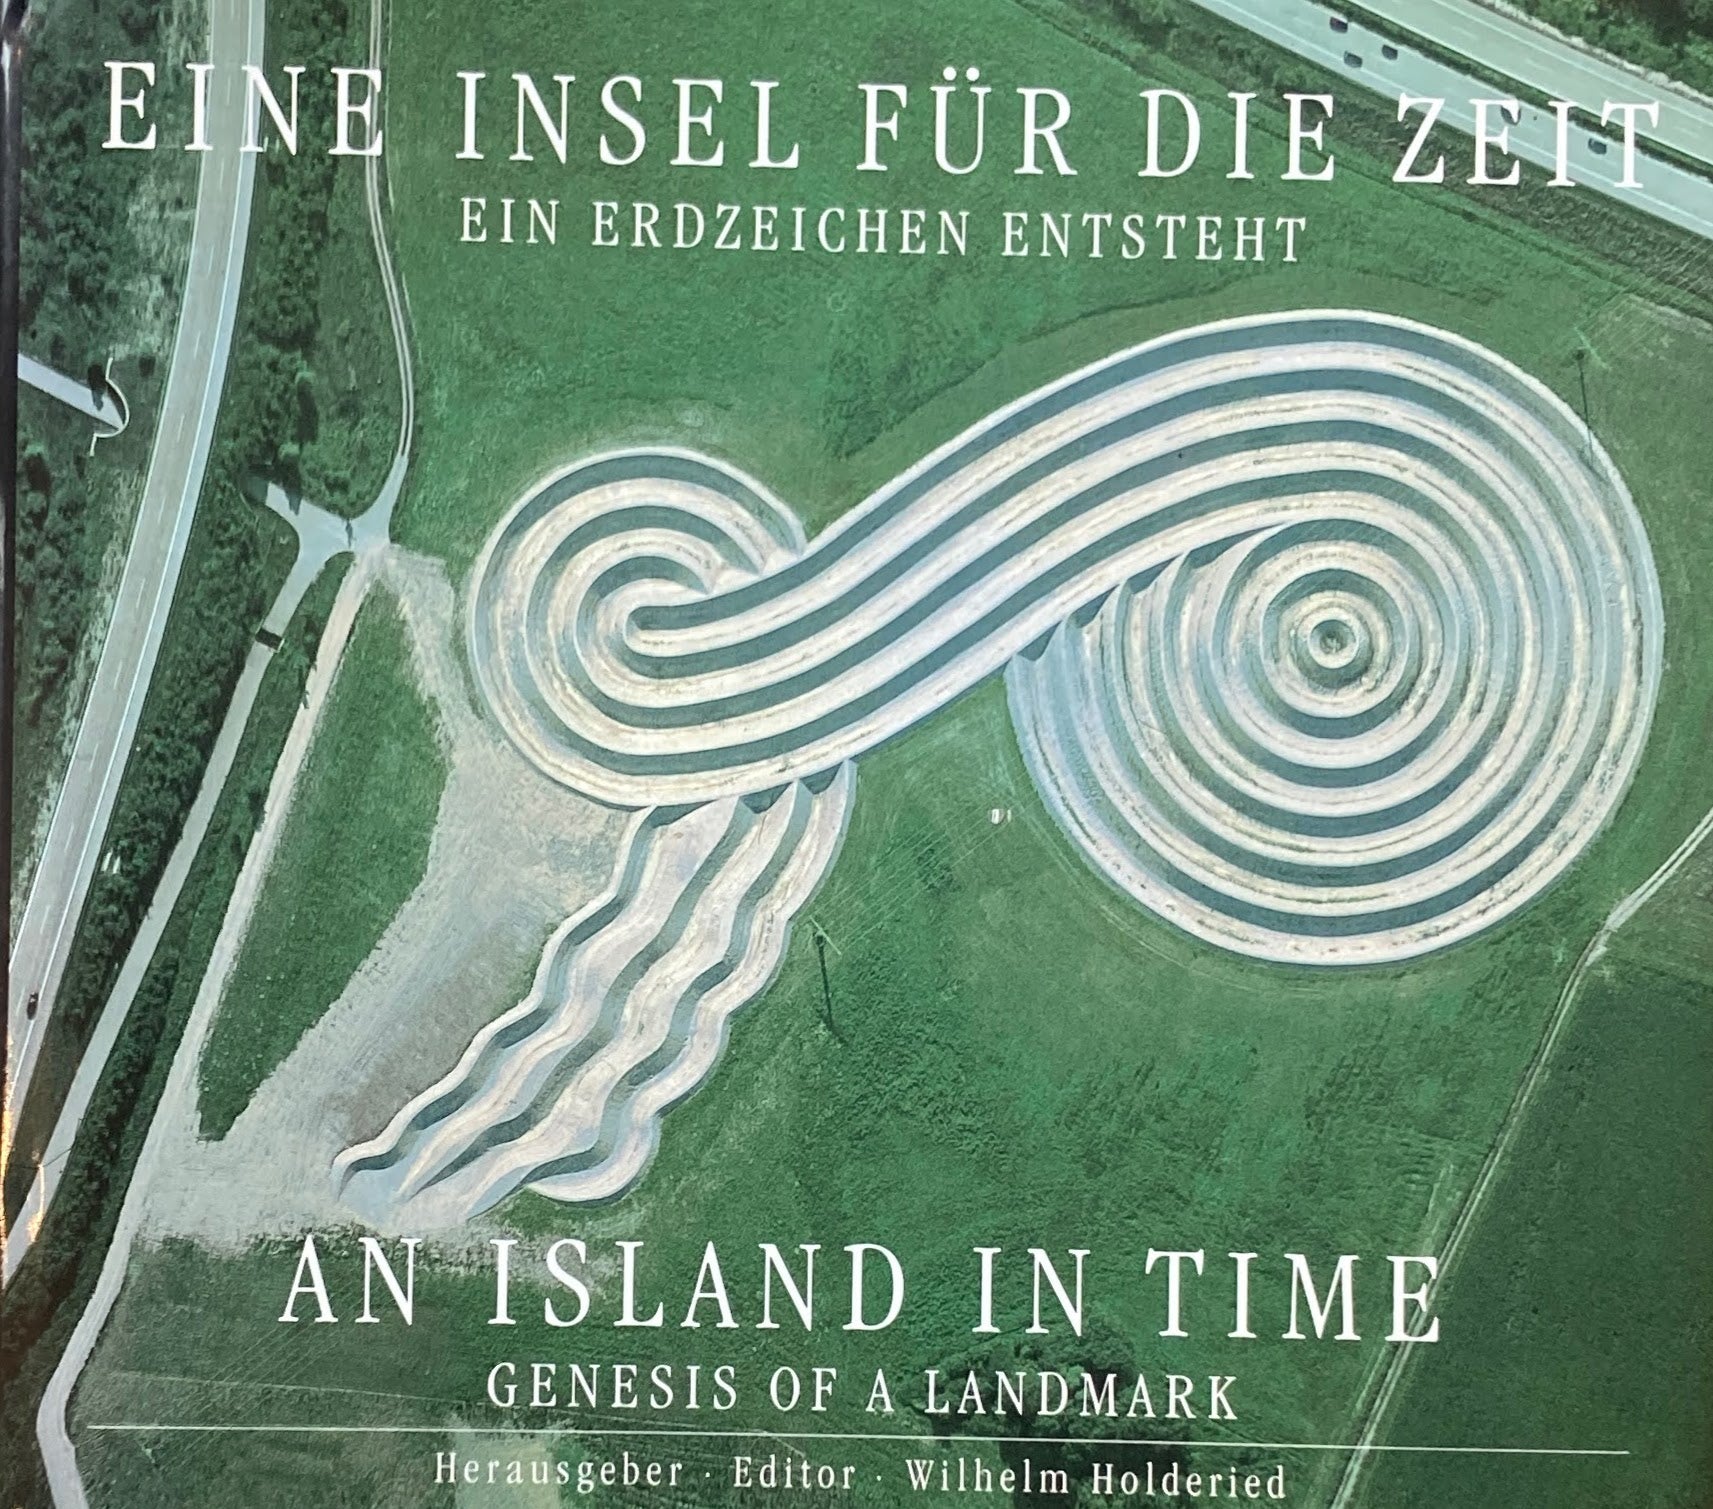 EINE INSEL FUR DIE ZEIT　AN ISLAND IN TIME 　Wilhelm Holderied